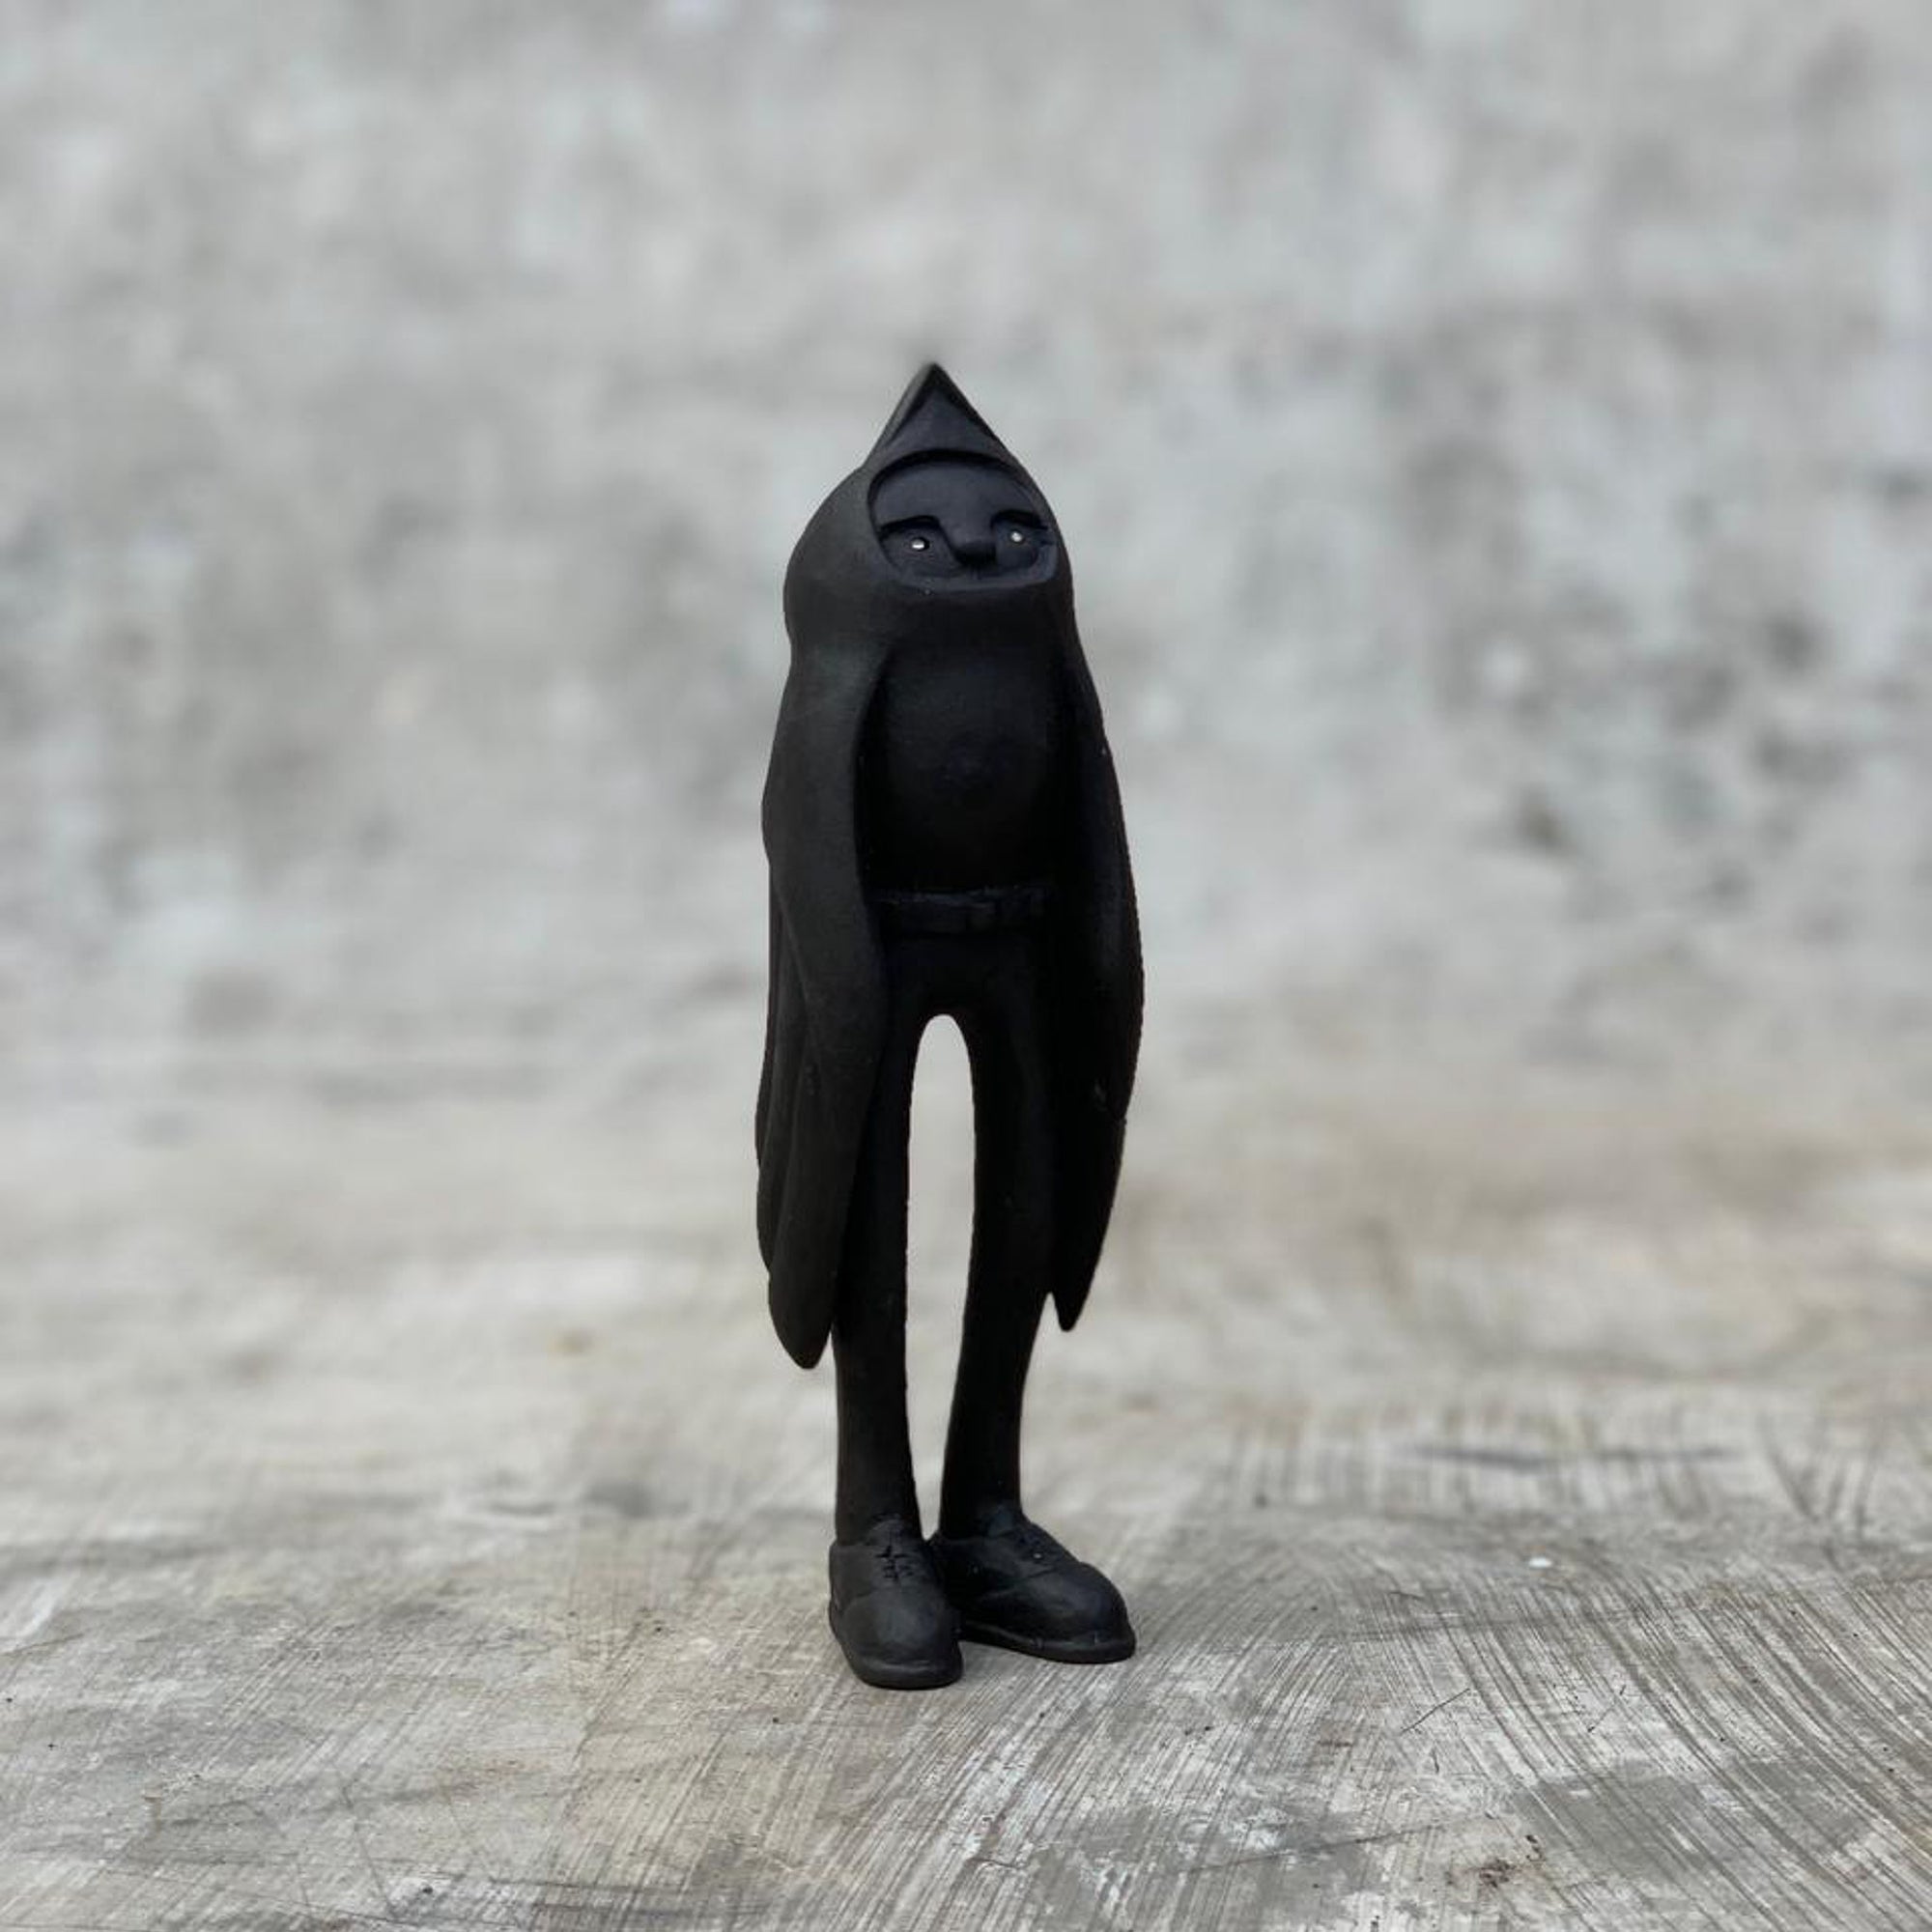 Ceramic black bird sculpture